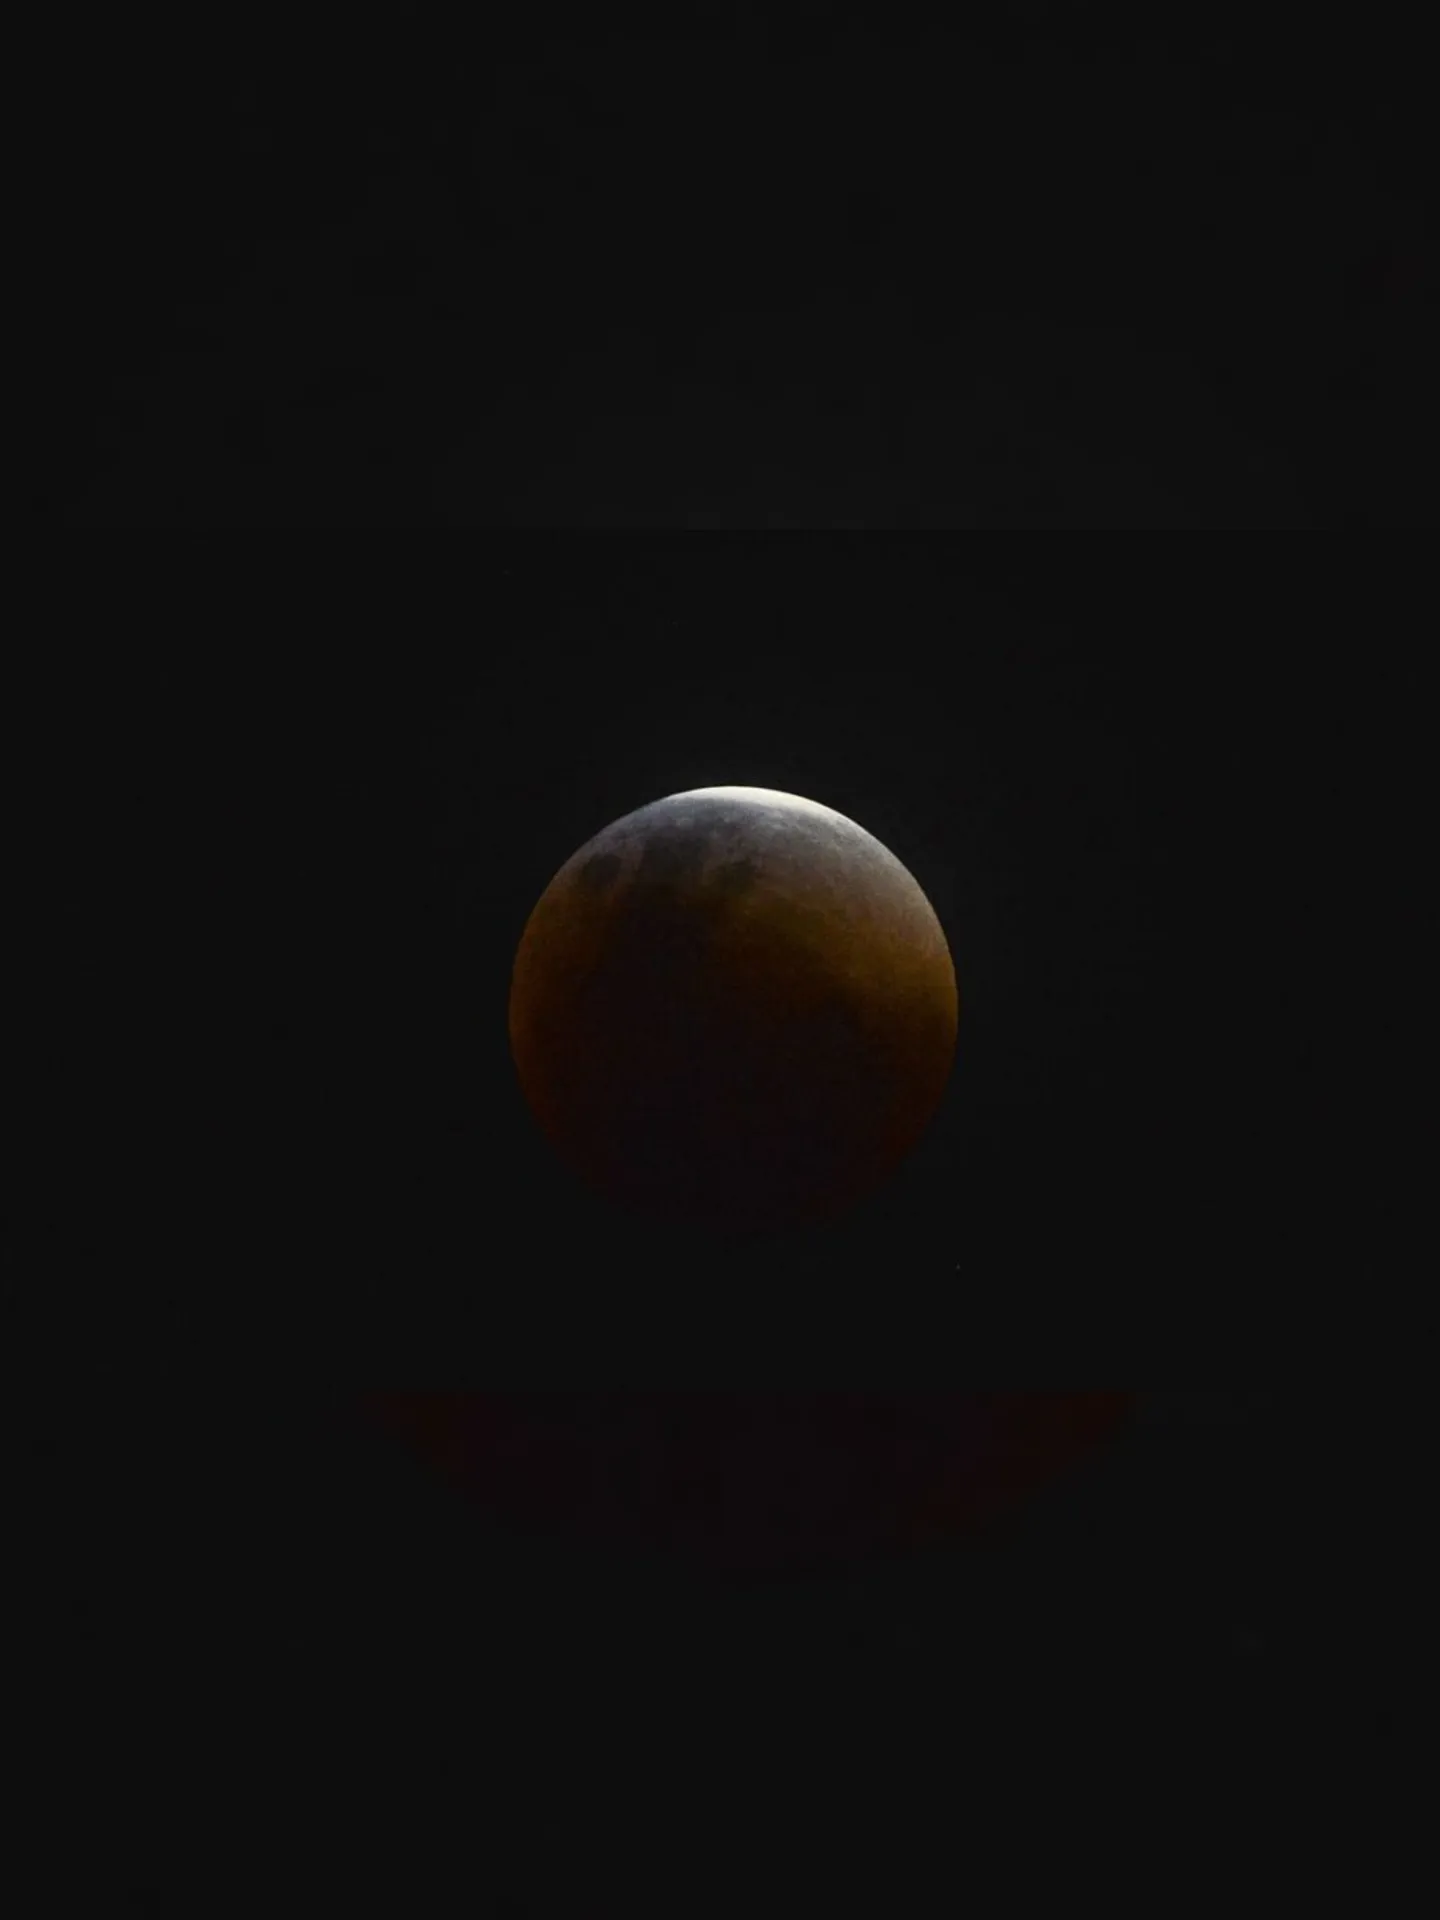 Eclipse total da lua.